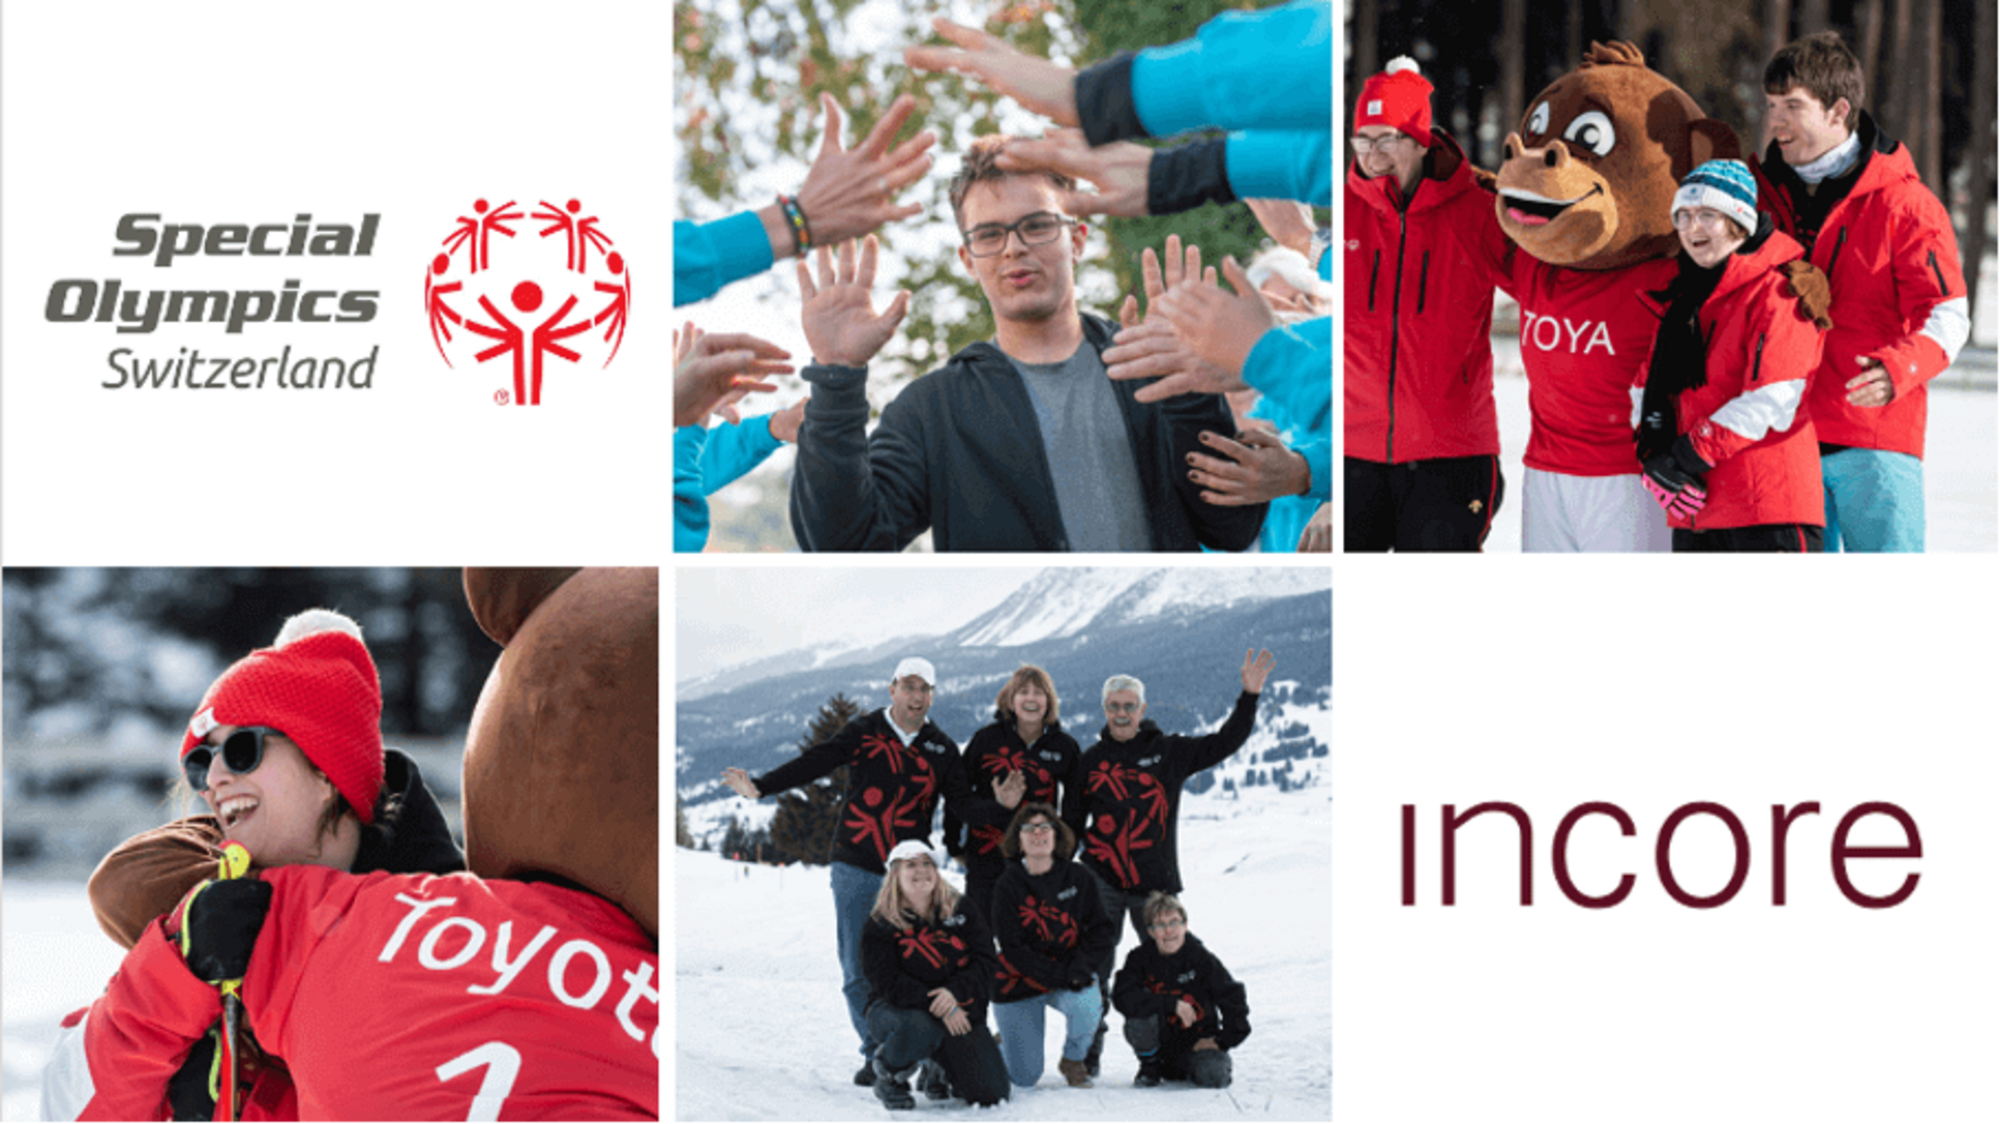 InCore Bank unterstützte Special Olympics-Athleten und -Athletinnen